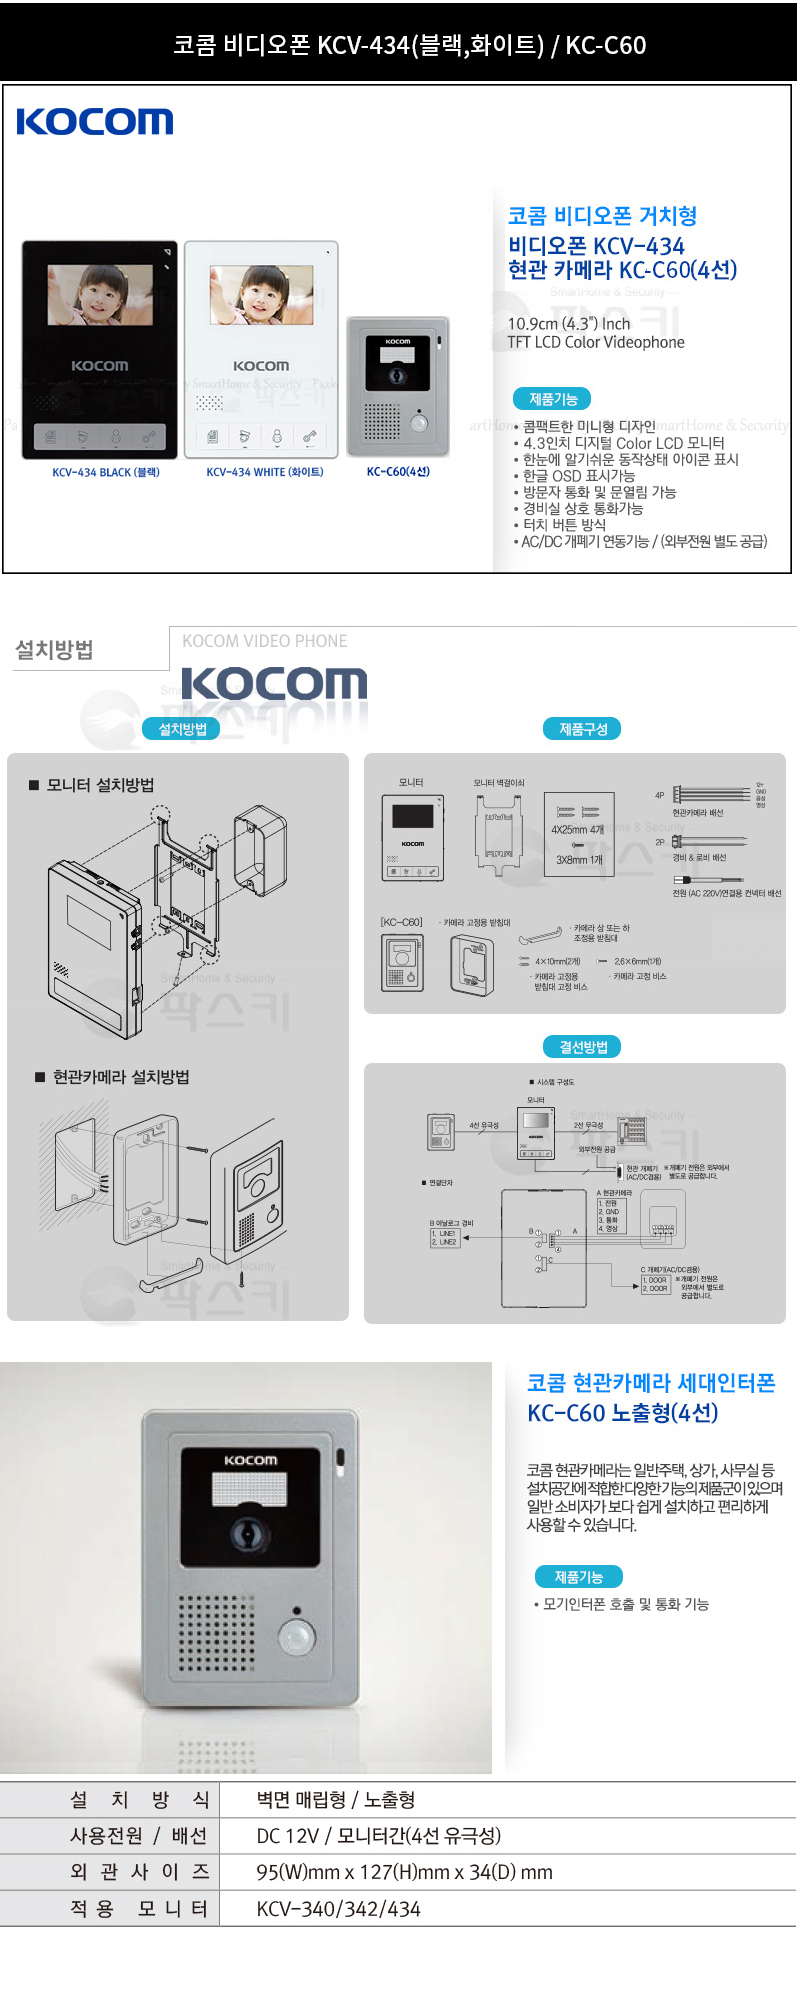 kocom_kcv-434_kc-c60cam_detail_145333.jpg